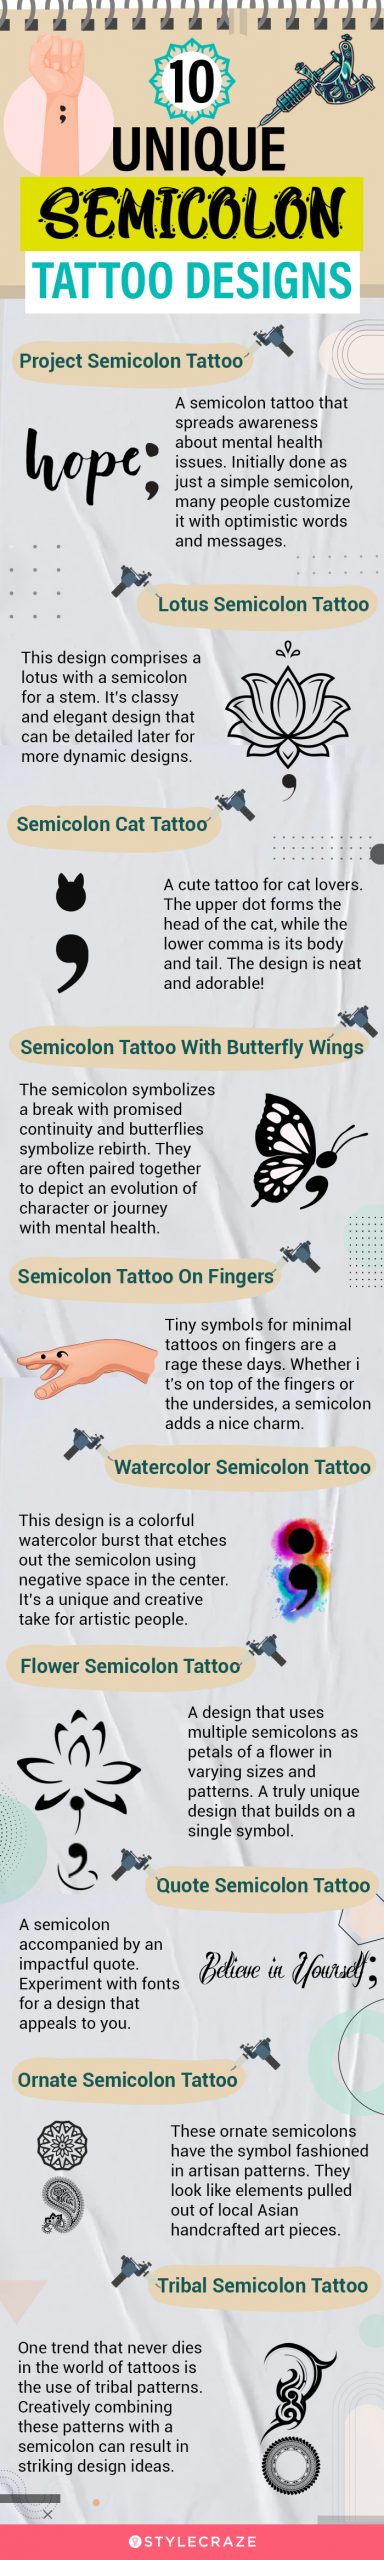 10 unique semicolon tattoo designs (infographic)